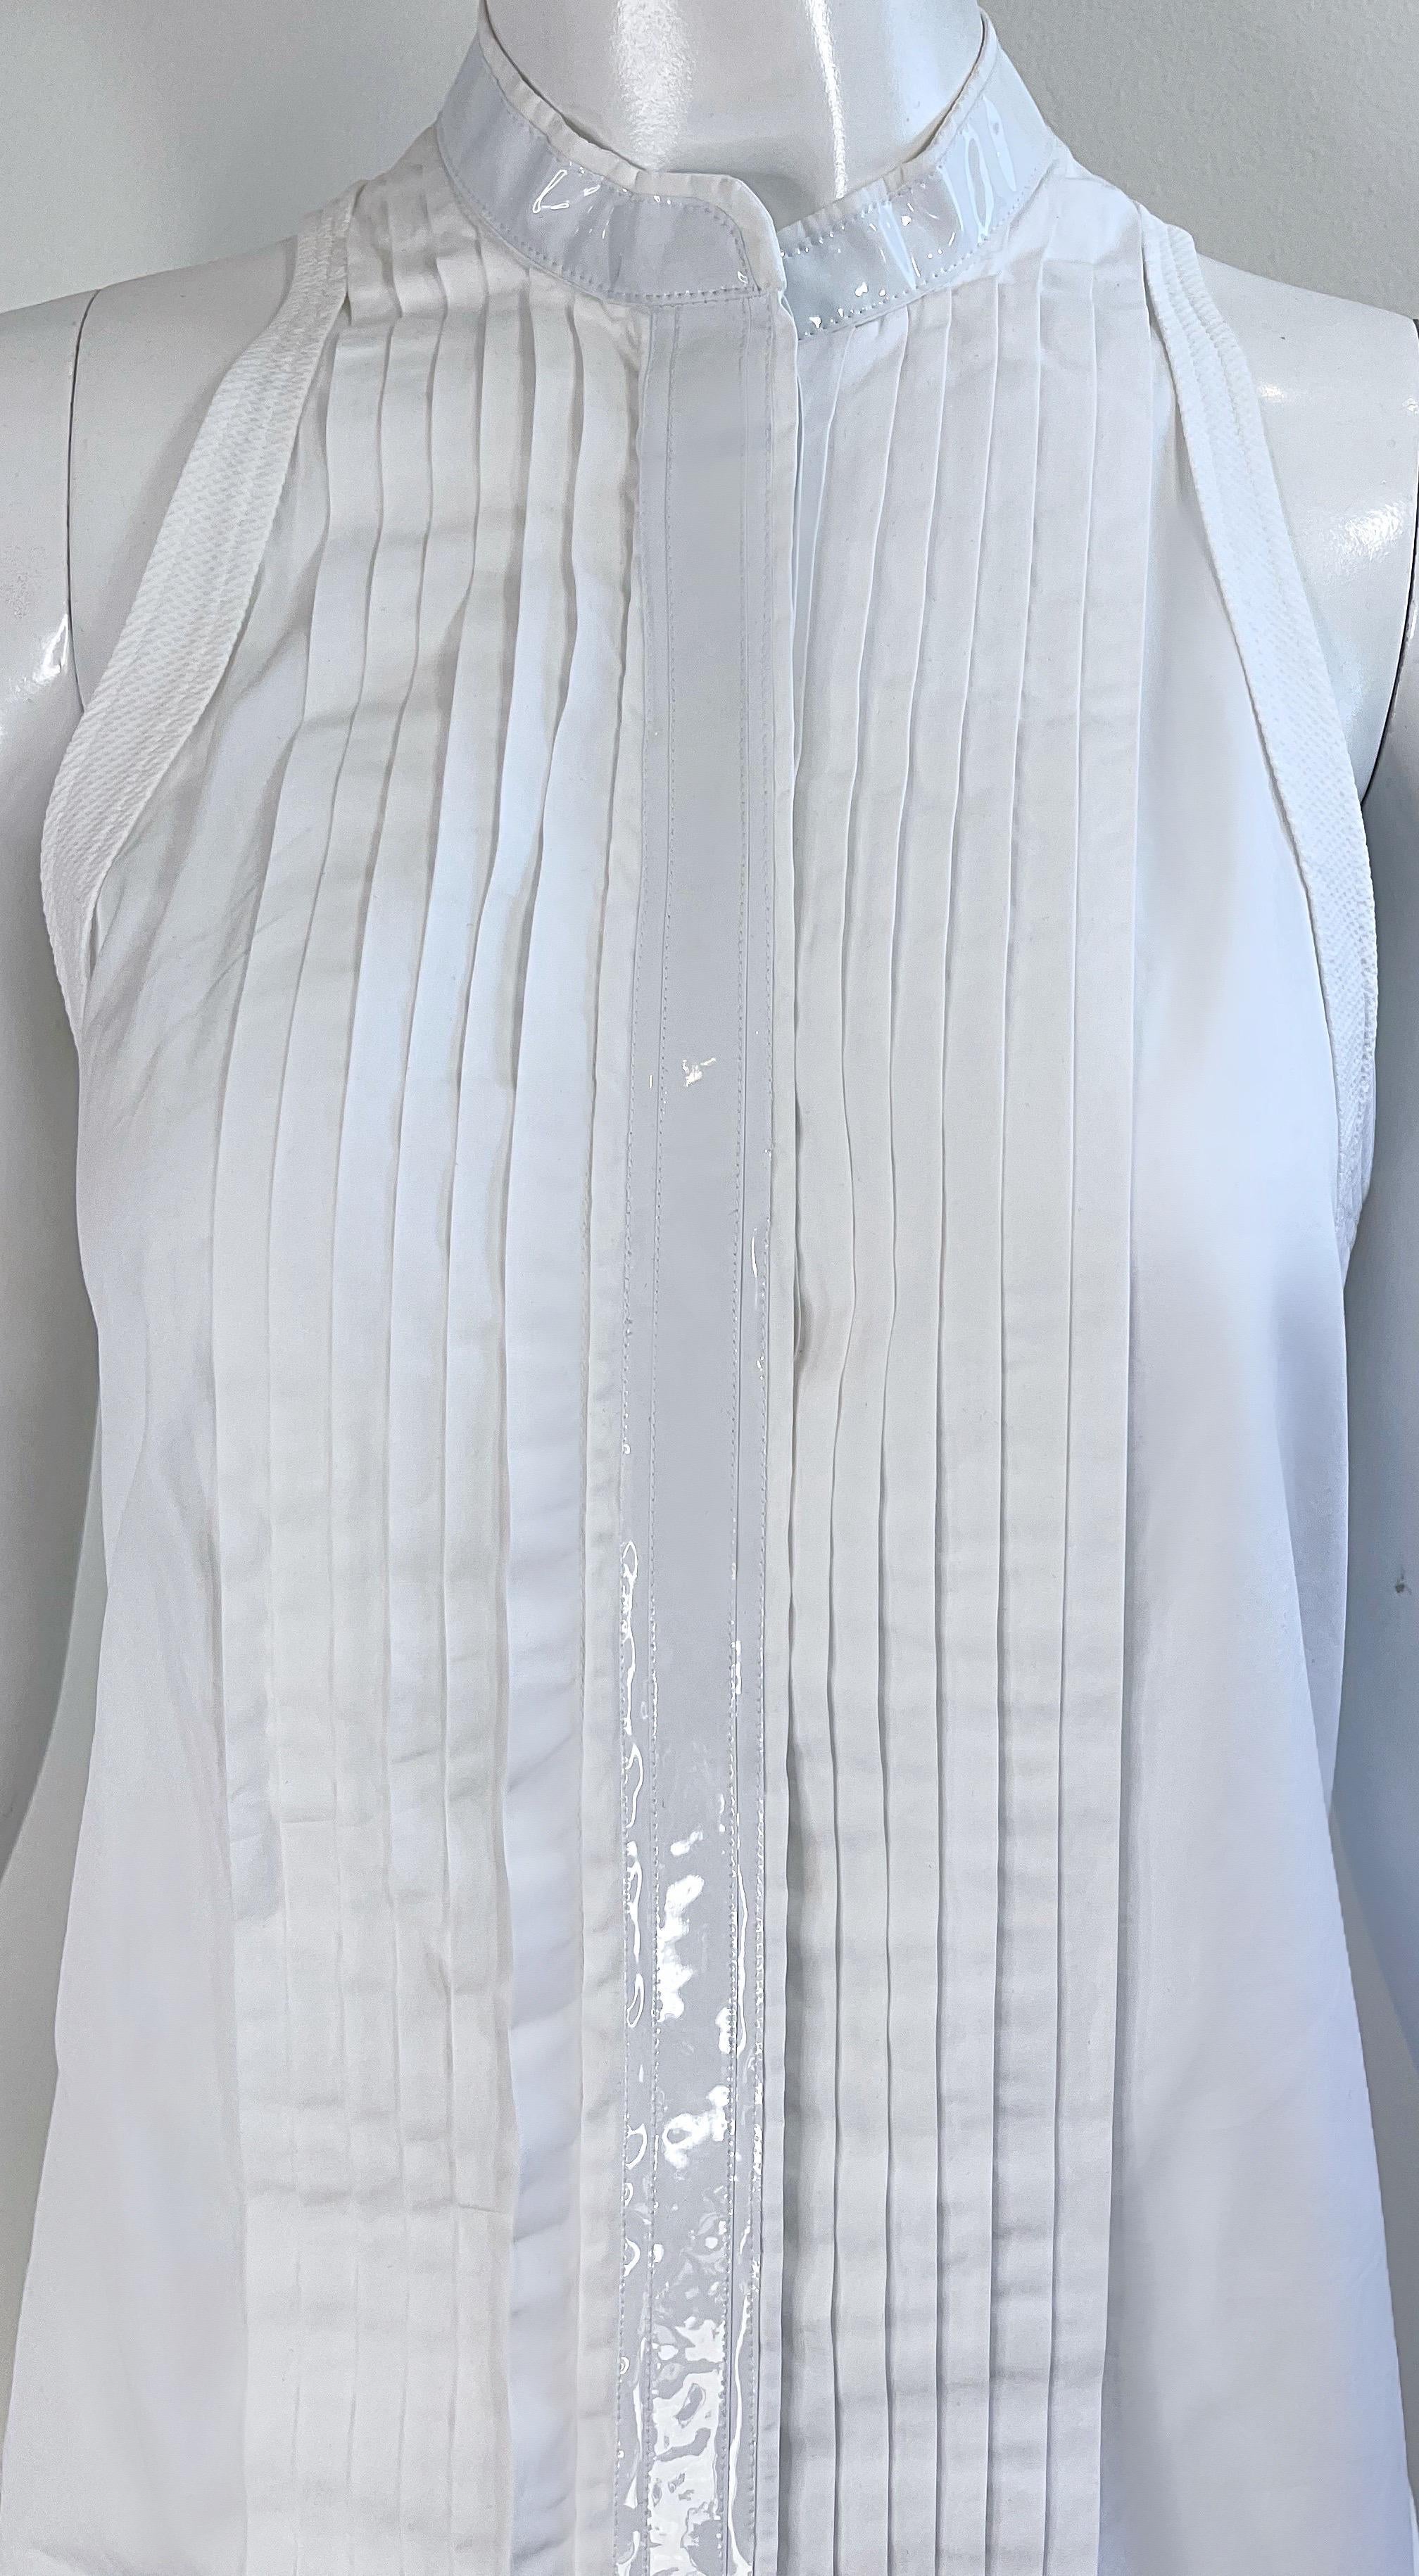 Balenciaga Spring 2007 by Nicolas Ghesquiere Size 38 / 8 White Tuxedo Dress  For Sale 1